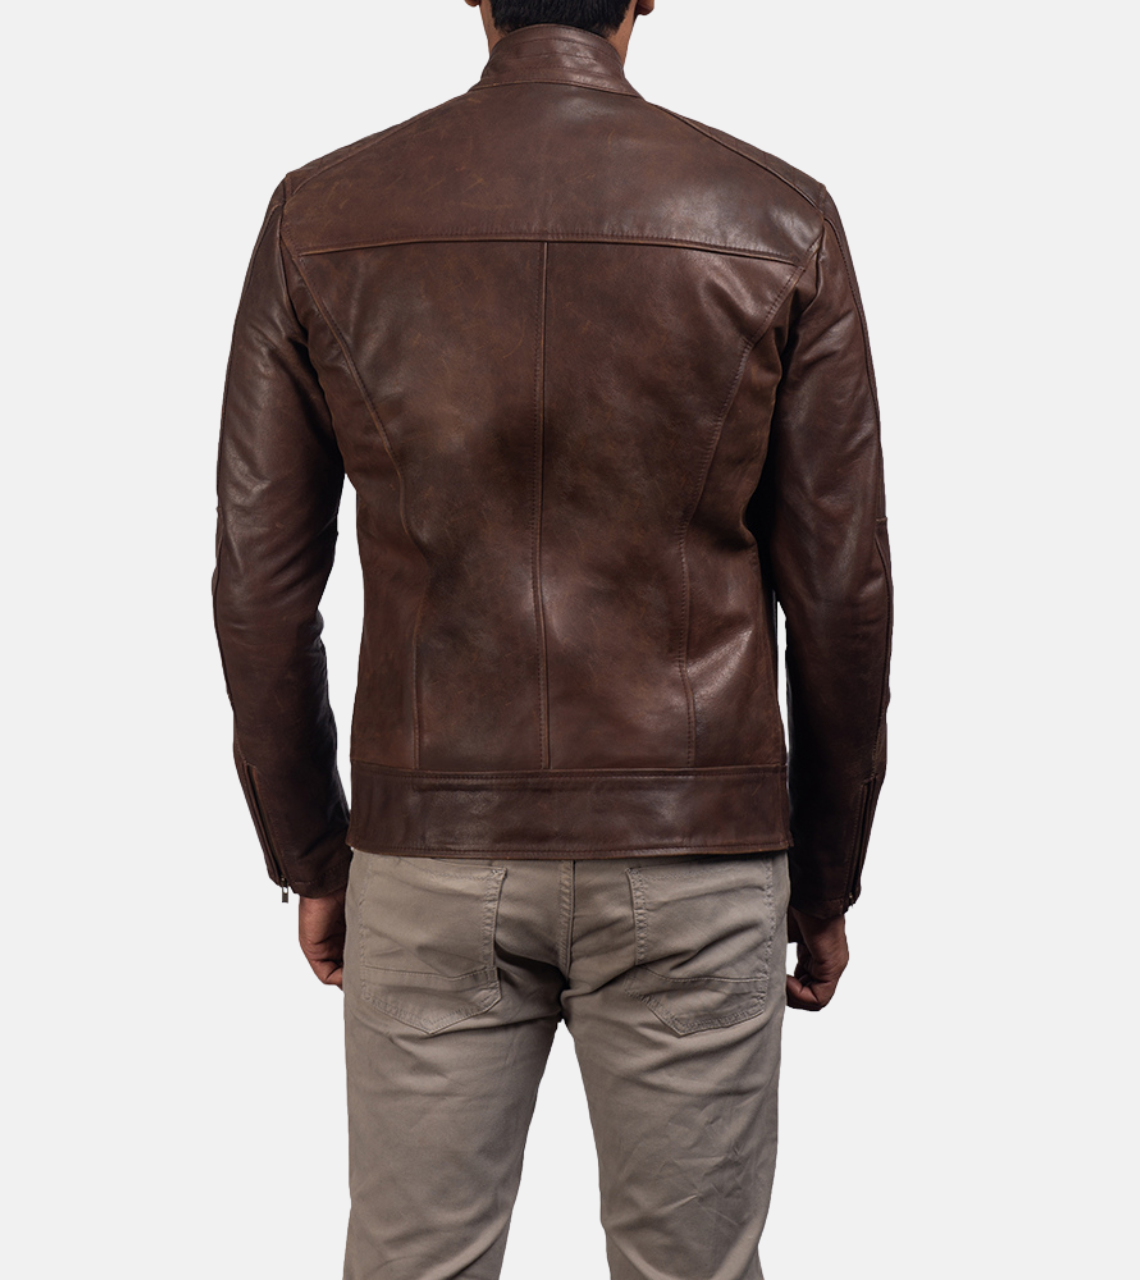  Vincent Brown Men's Leather Jacket Back